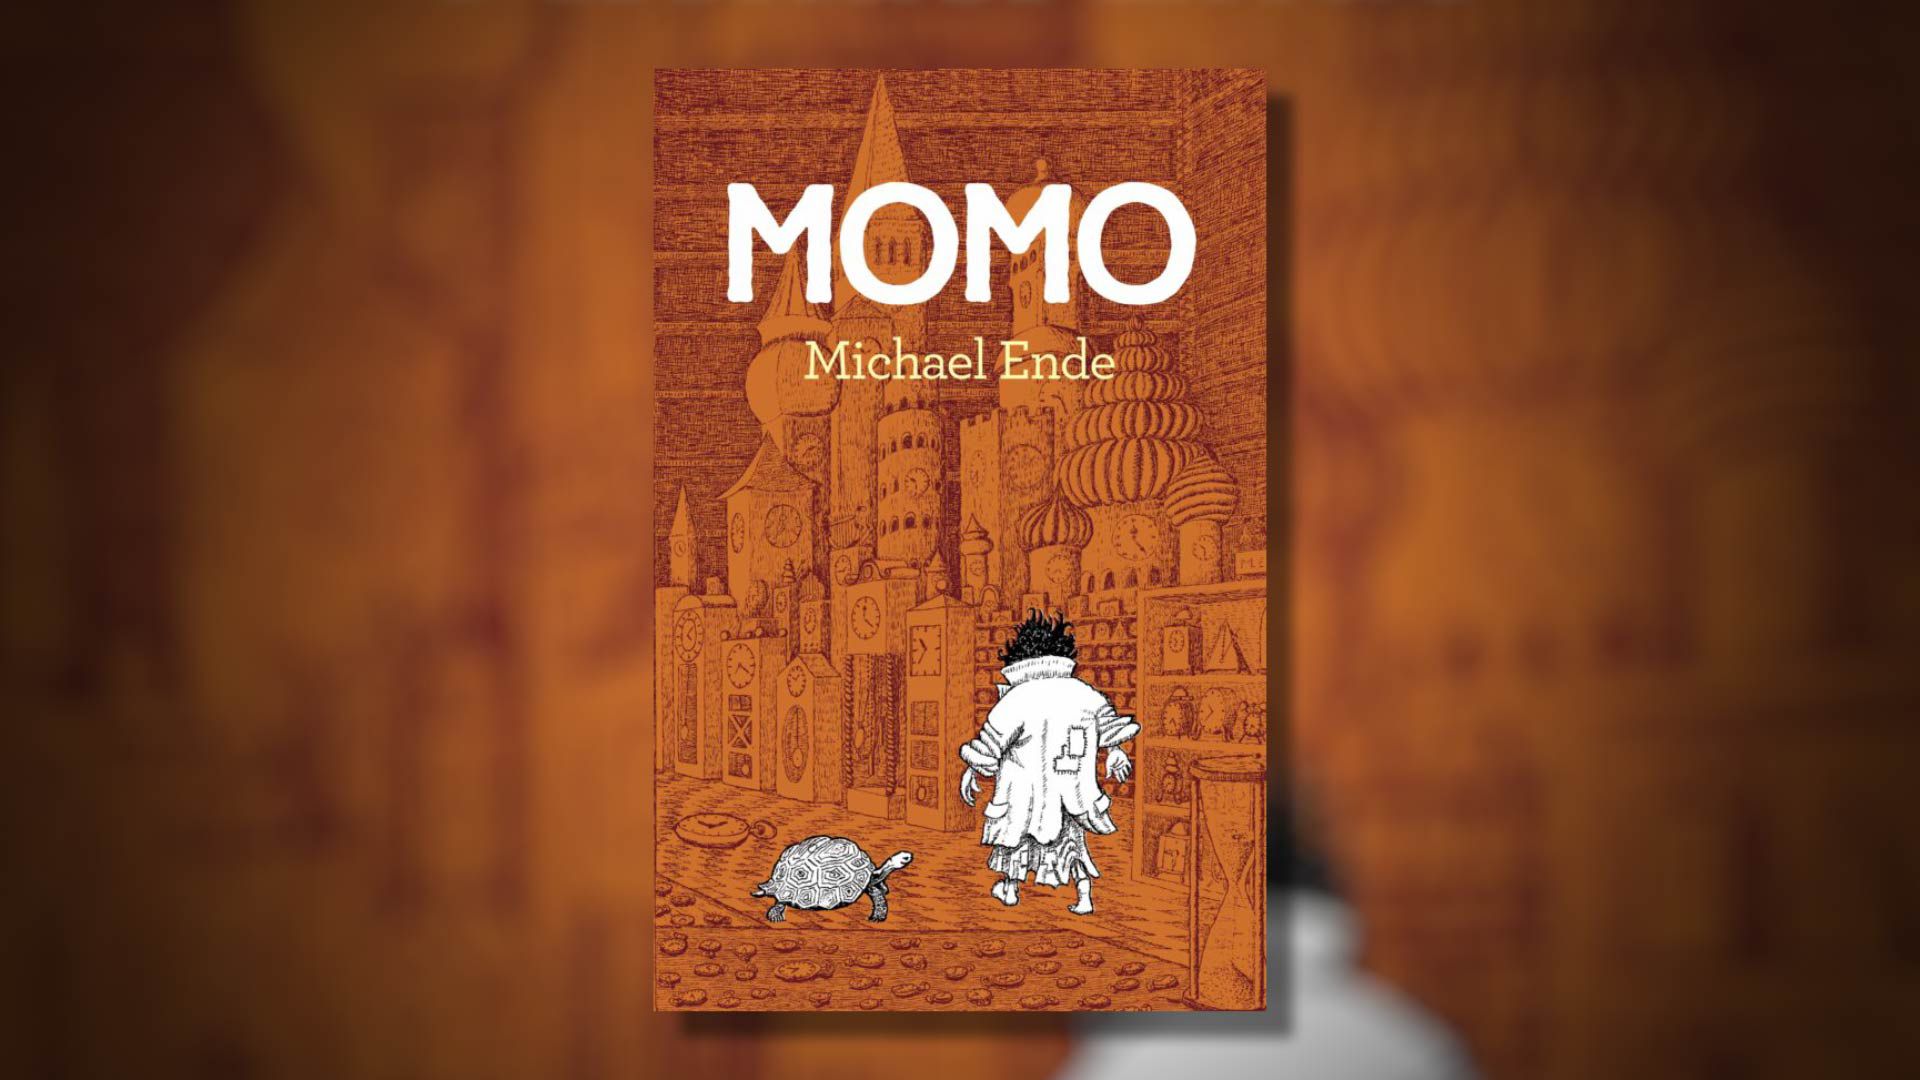 Portada del libro “Momo” por Michael Ende